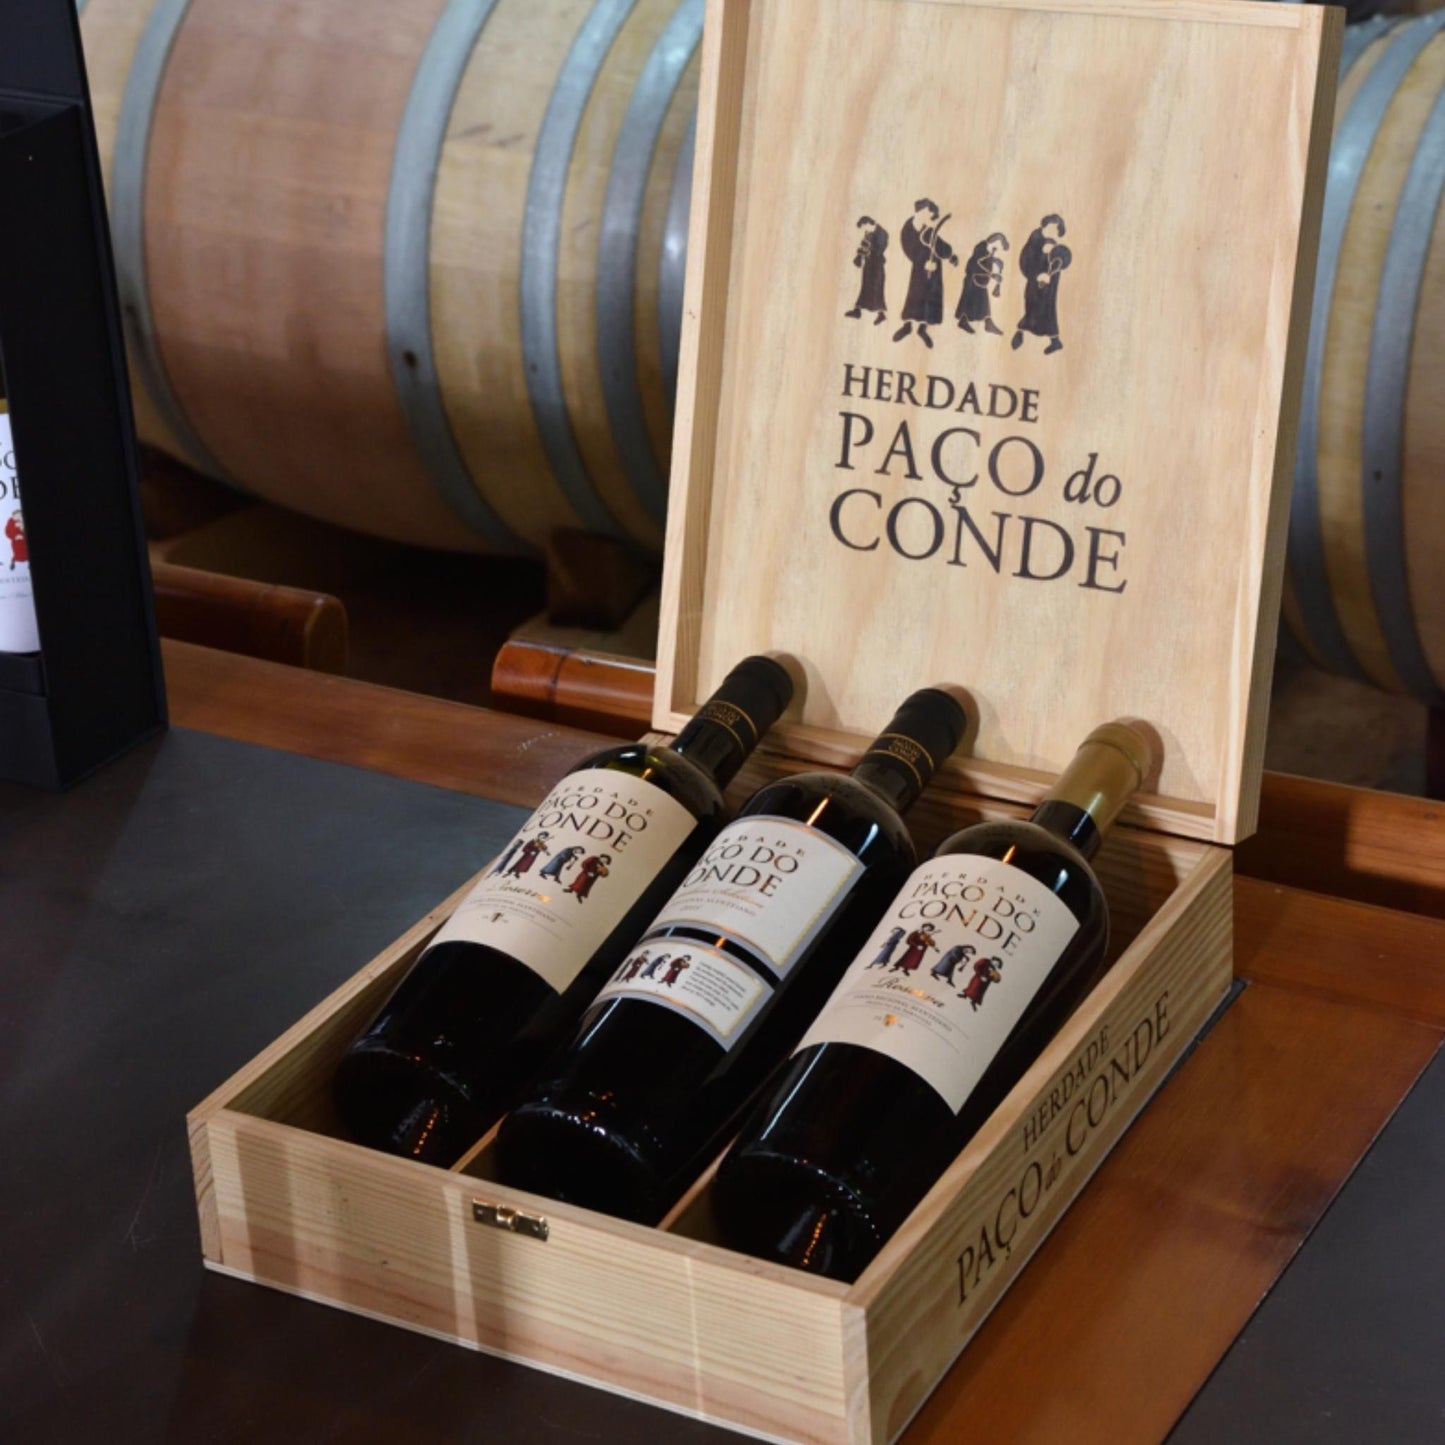 HERDADE PAÇO DO CONDE RESERVA: Rotwein vom Weingut Herdade Paco do Conde aus dem dem Alentejo/Portugal von der Vinho Bar. Drei Weinflaschen in einer Holzkiste mit Logo des Weingutes vor Weinfässern.